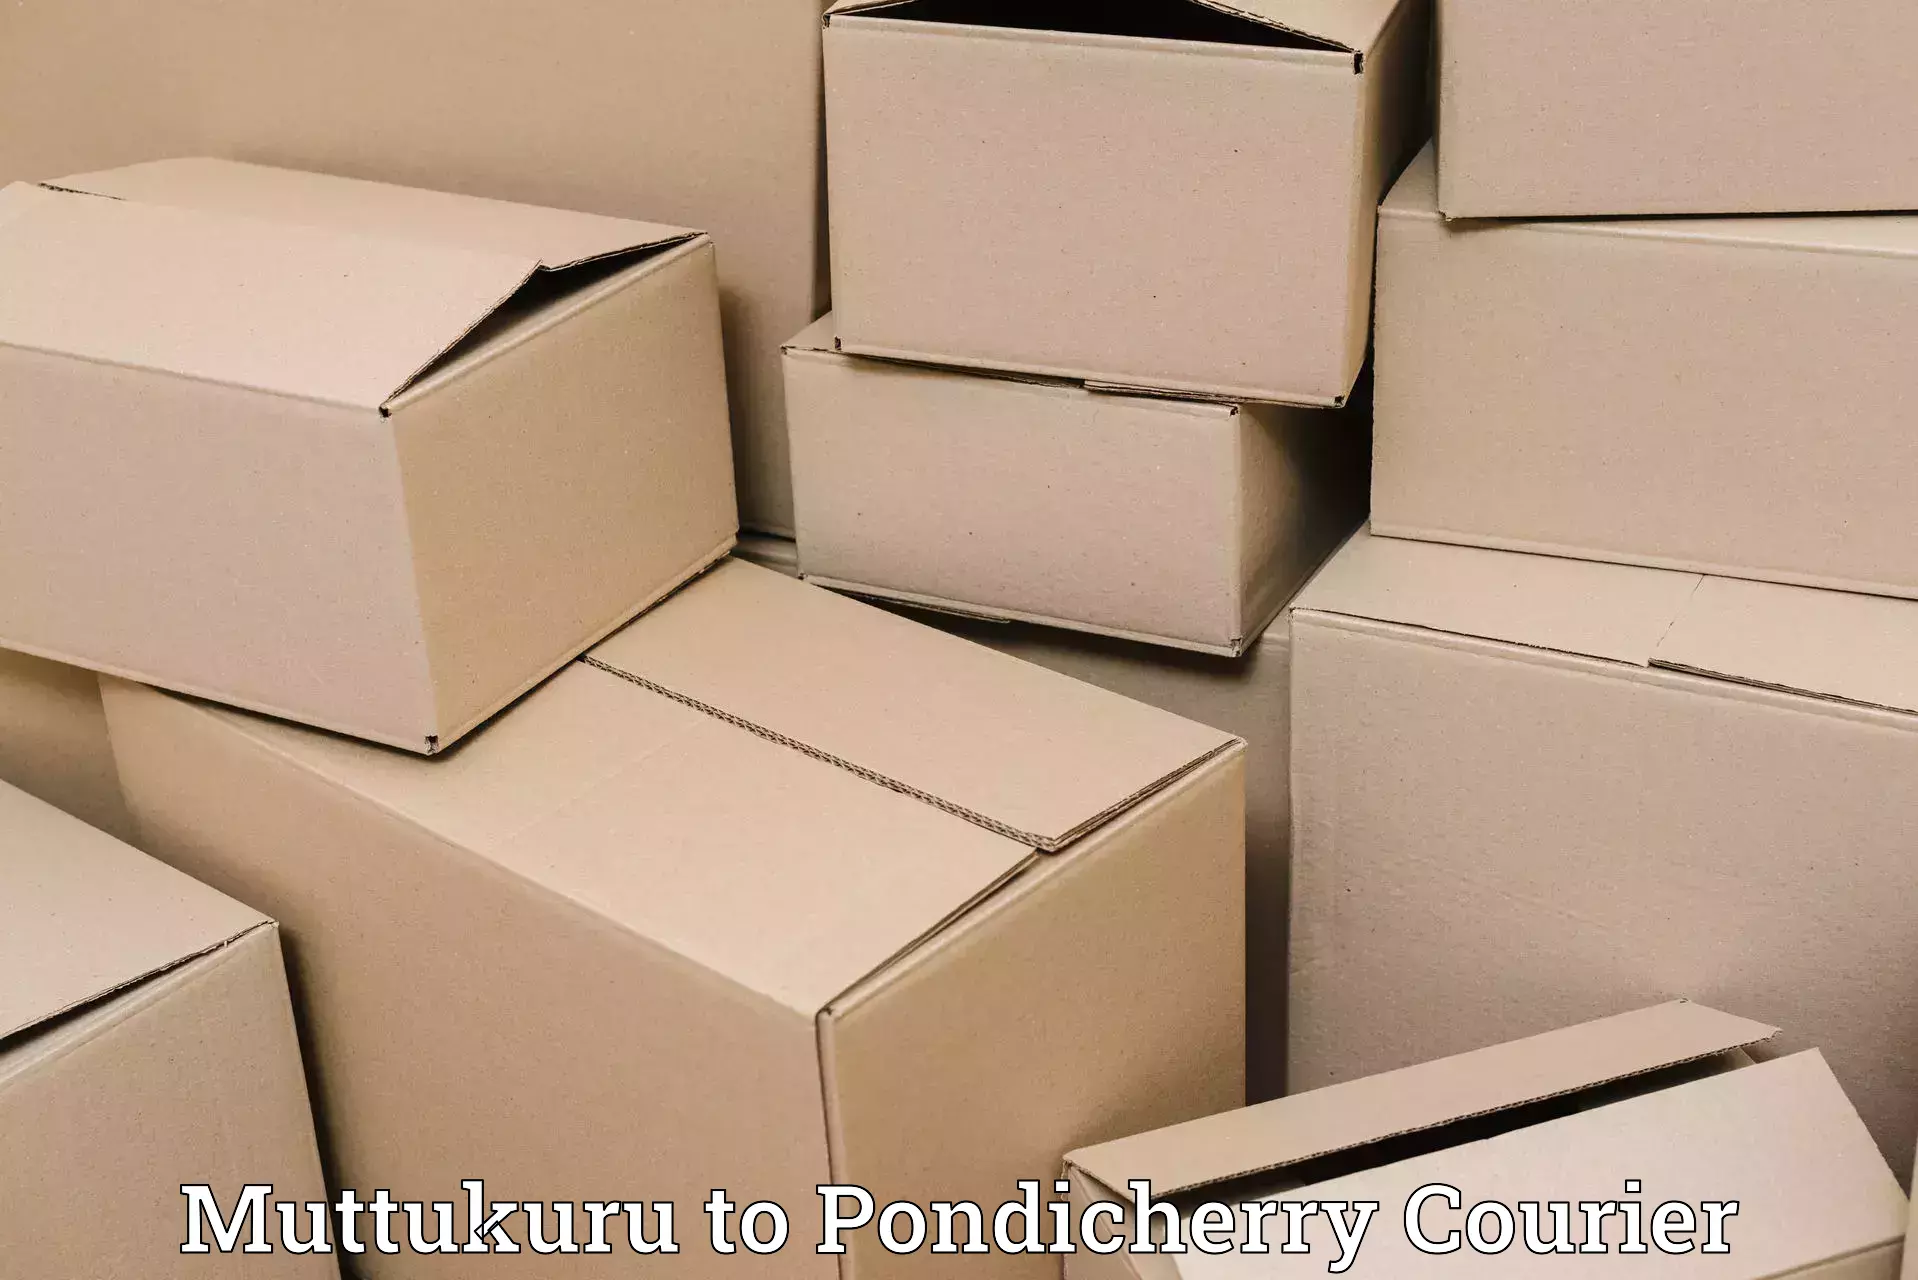 Next-generation courier services Muttukuru to Pondicherry